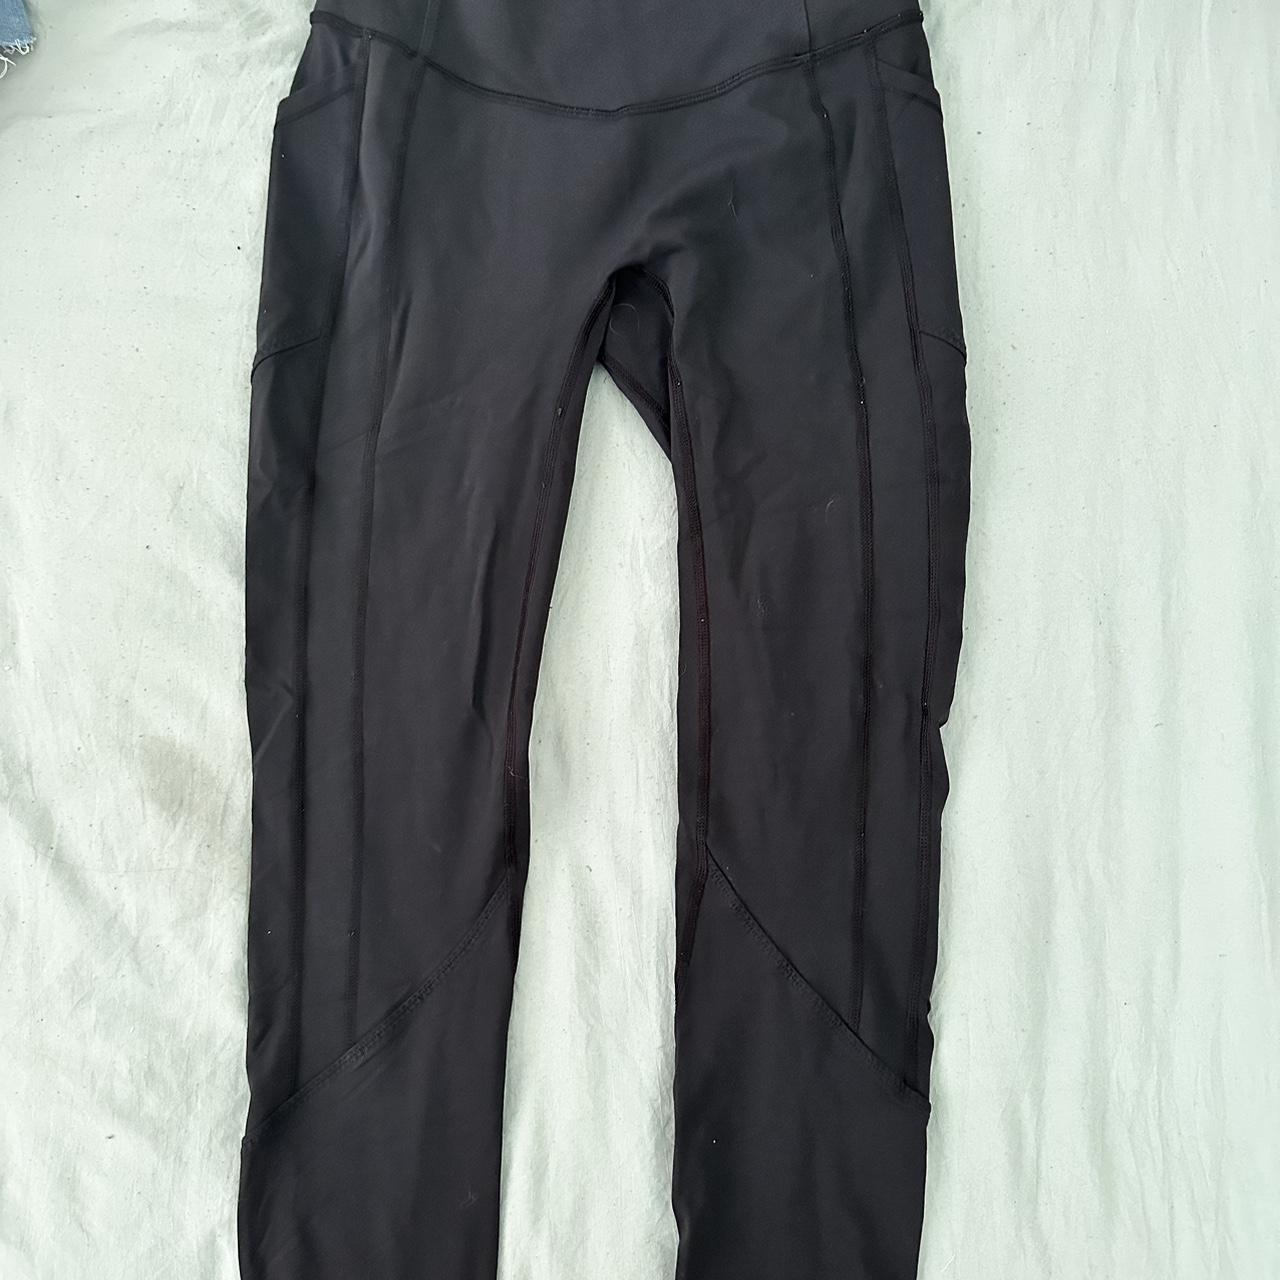 black lululemon leggings with pockets no tag but - Depop